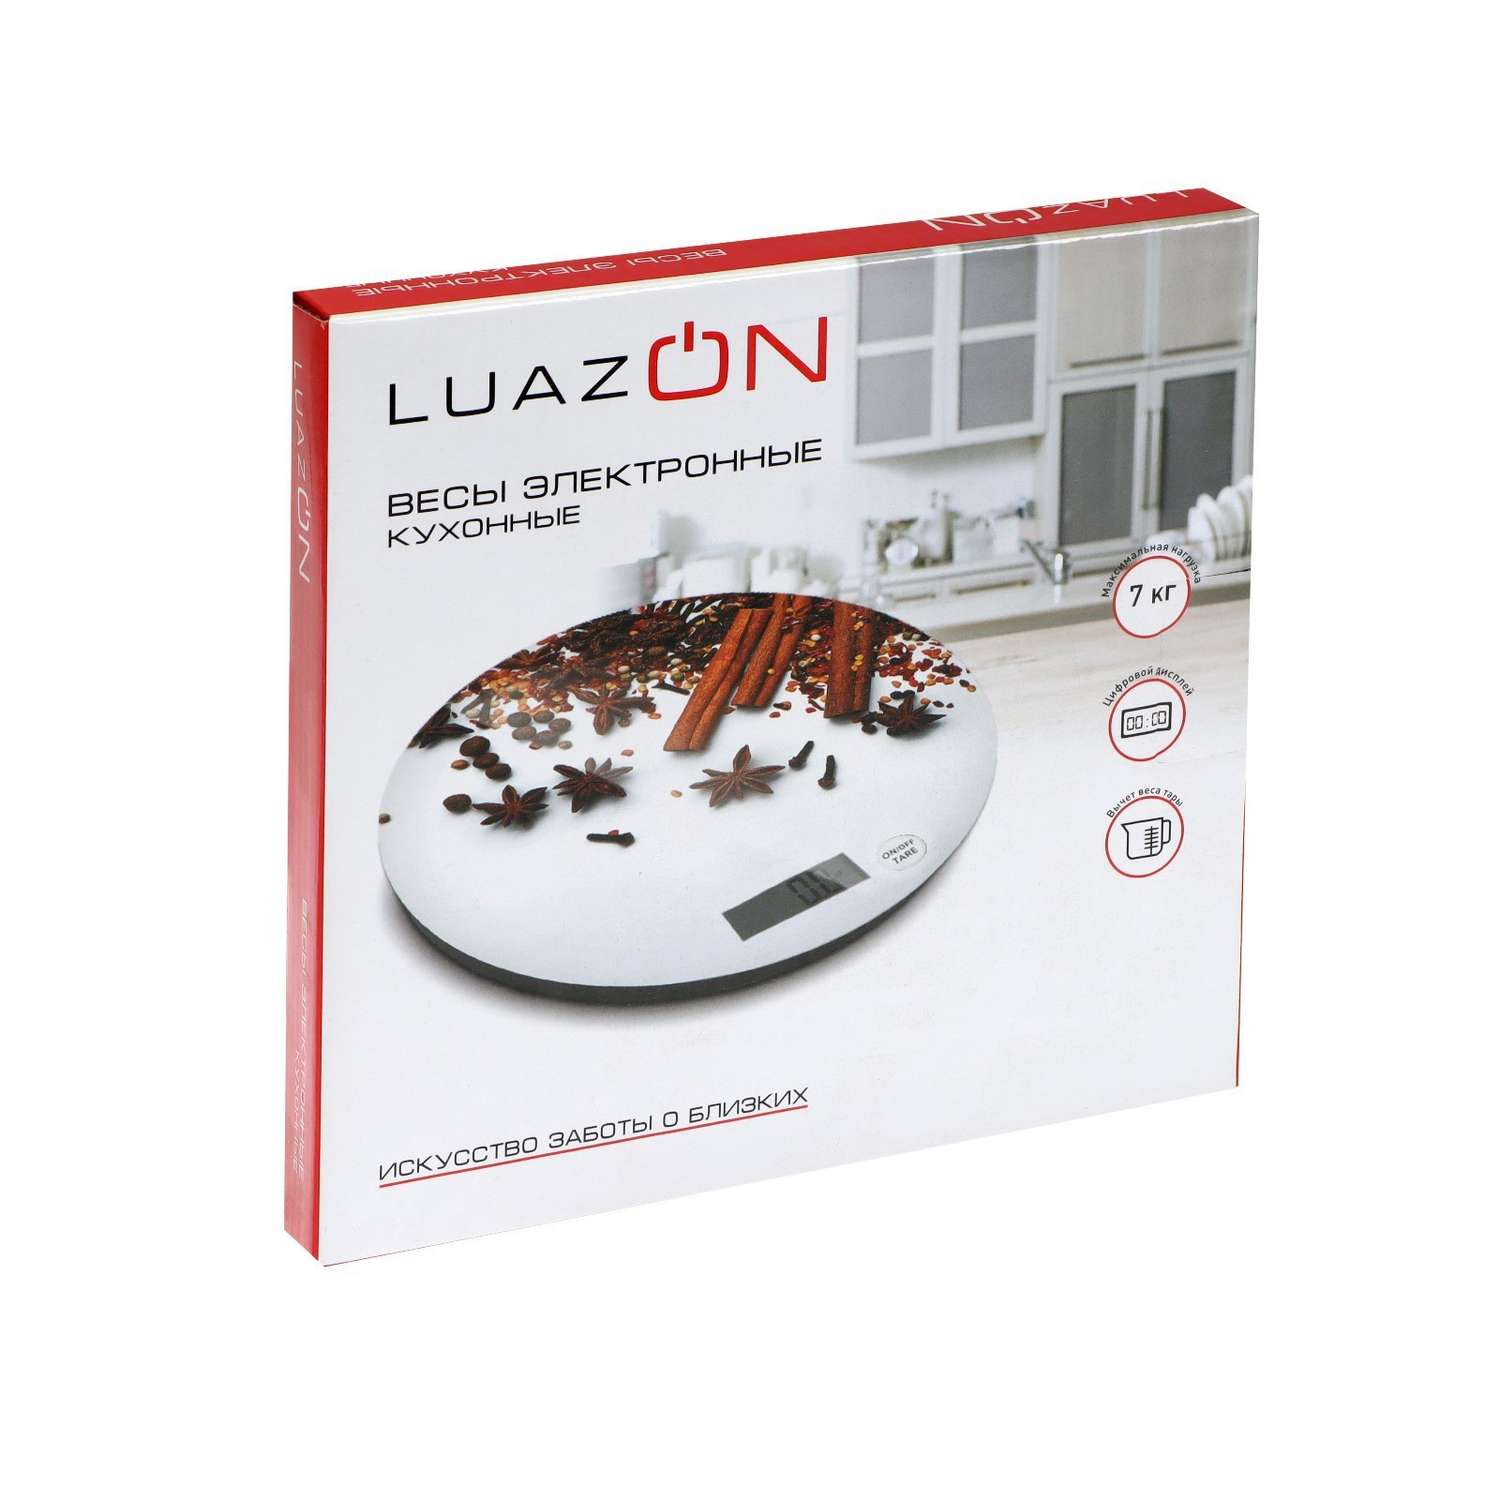 Весы кухонные Luazon Home LVK-701 «Апельсин» электронные до 7 кг - фото 9